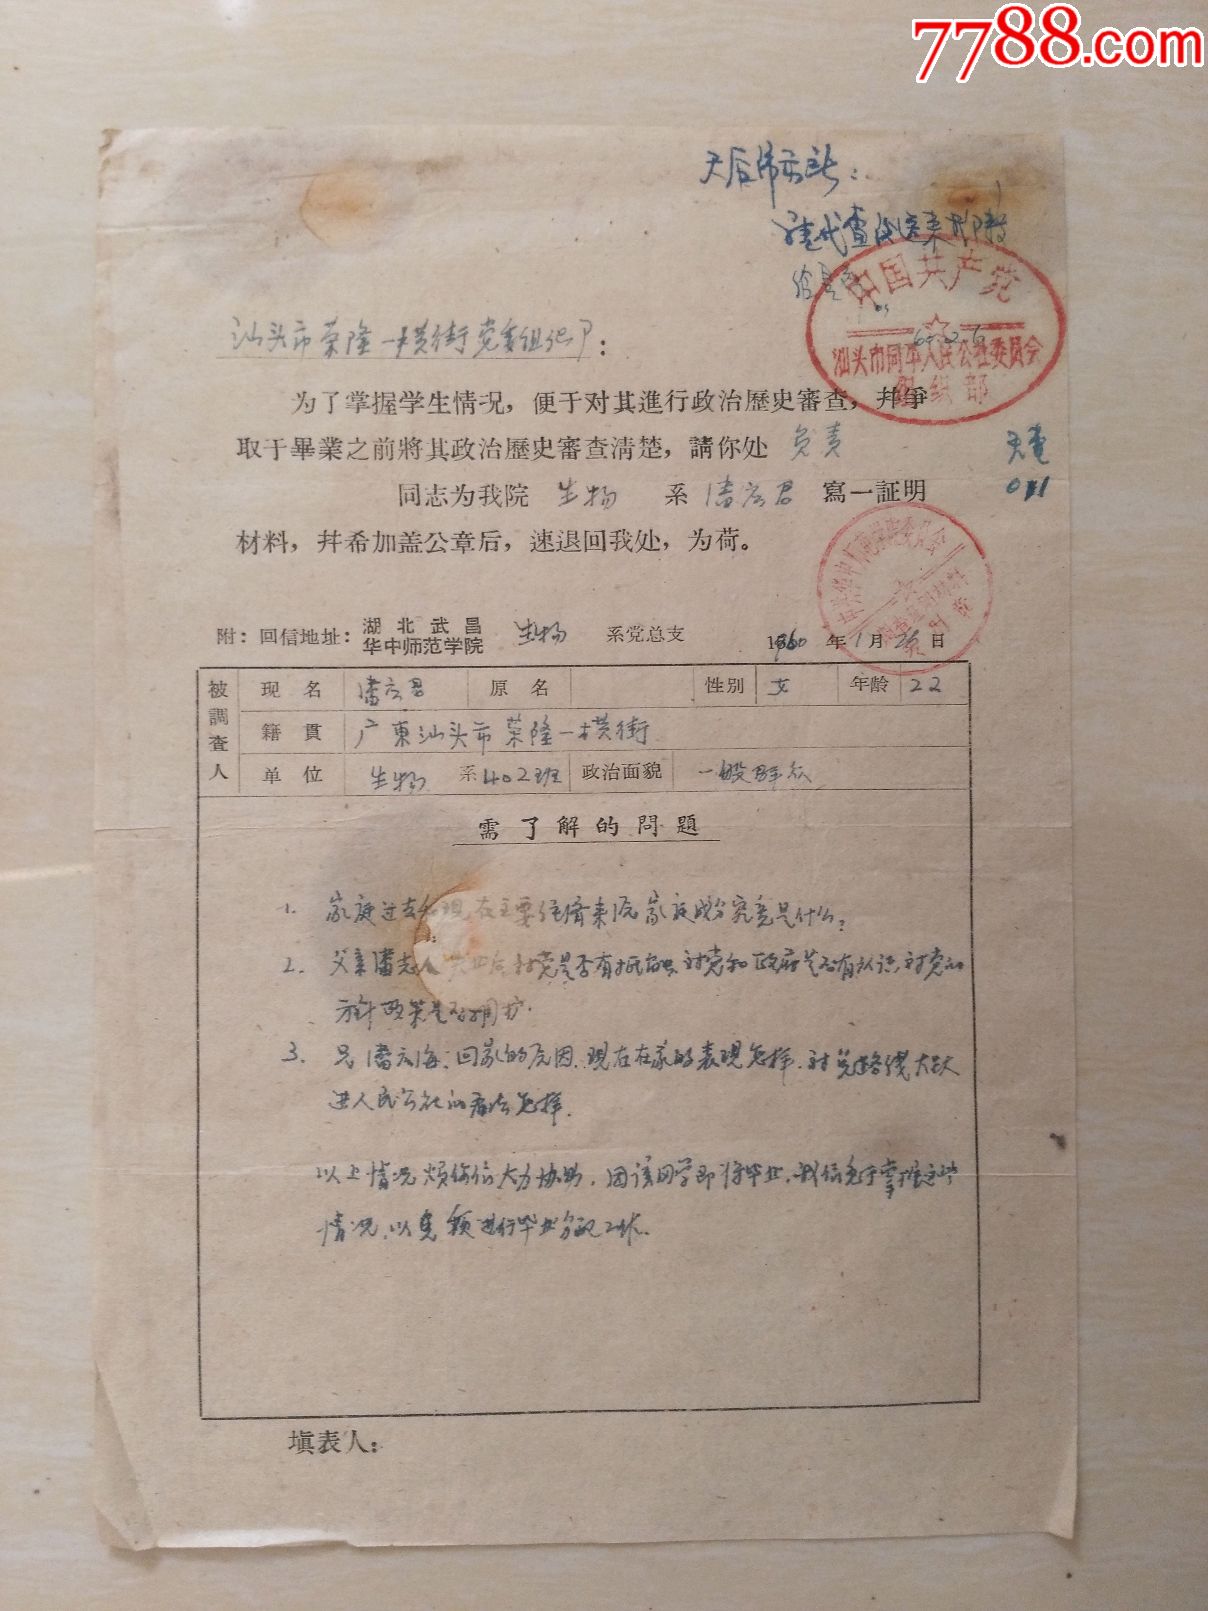 1960年华中师范学院毕业生统一分配工作登记